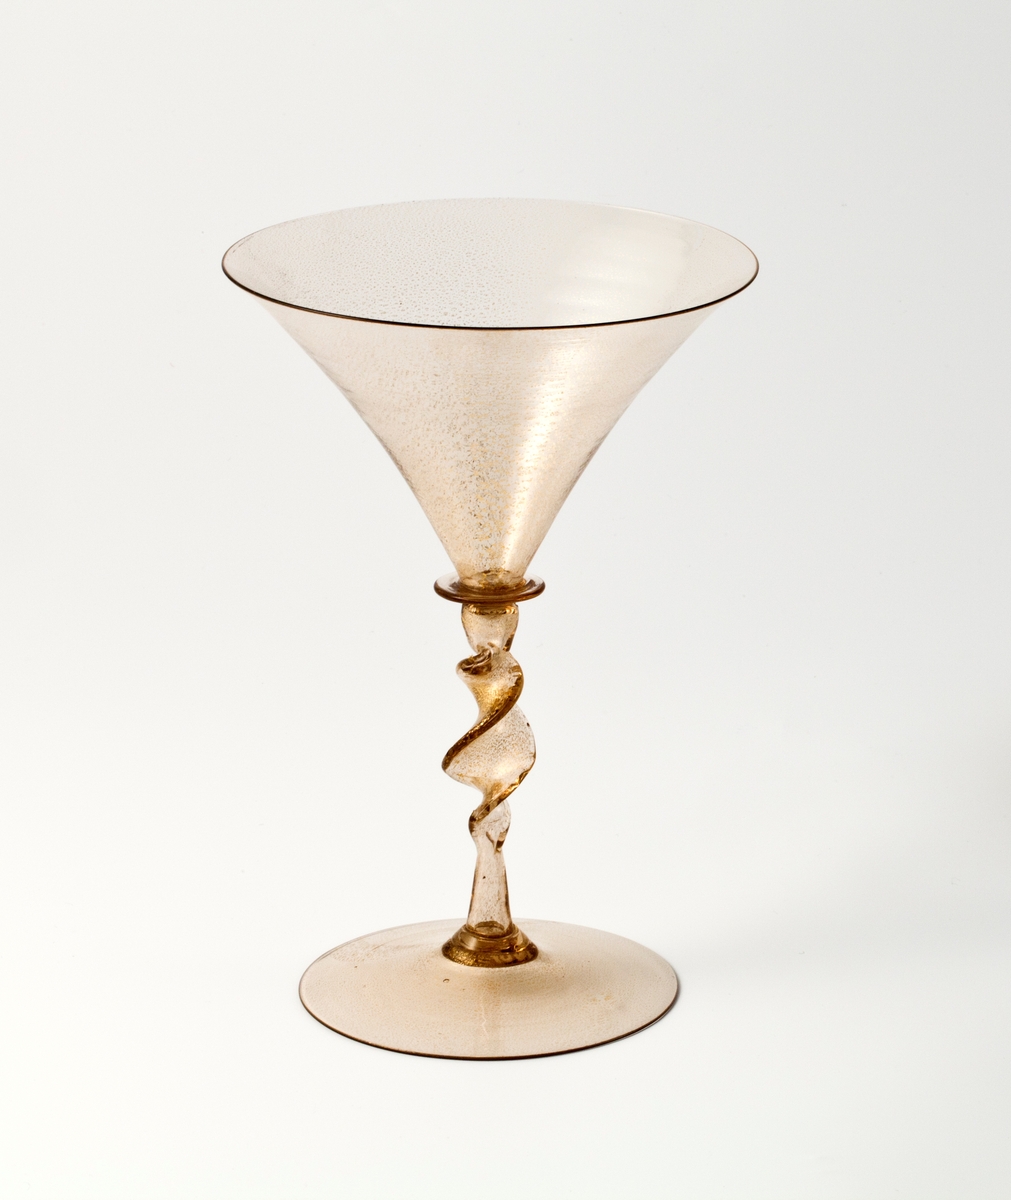 Glasspokal med konisk cupa, spiralformet stett og svakt hevet fotplate. Brunlig glass med innlagt bladgull.